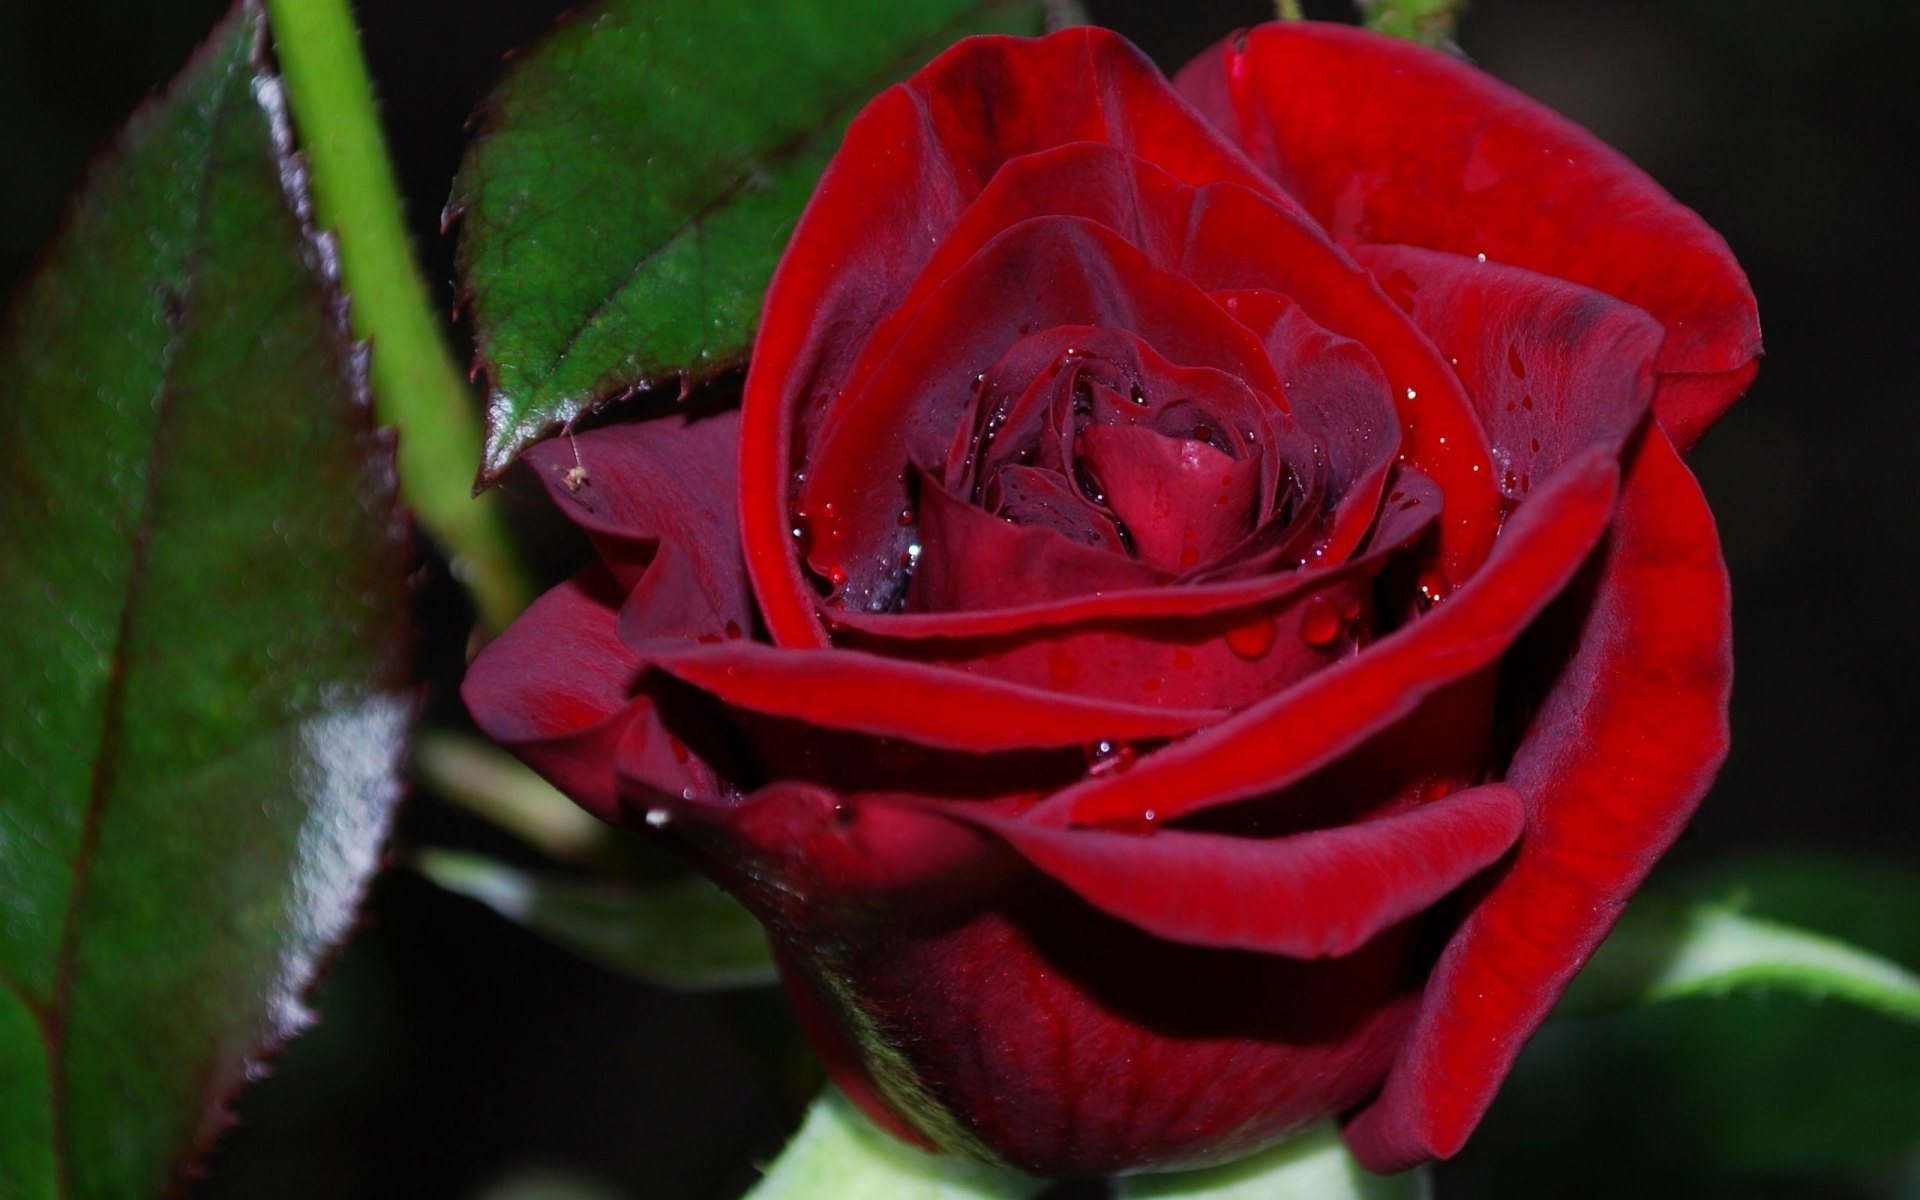 tapete mawar merah,blume,gartenrosen,blühende pflanze,rot,blütenblatt